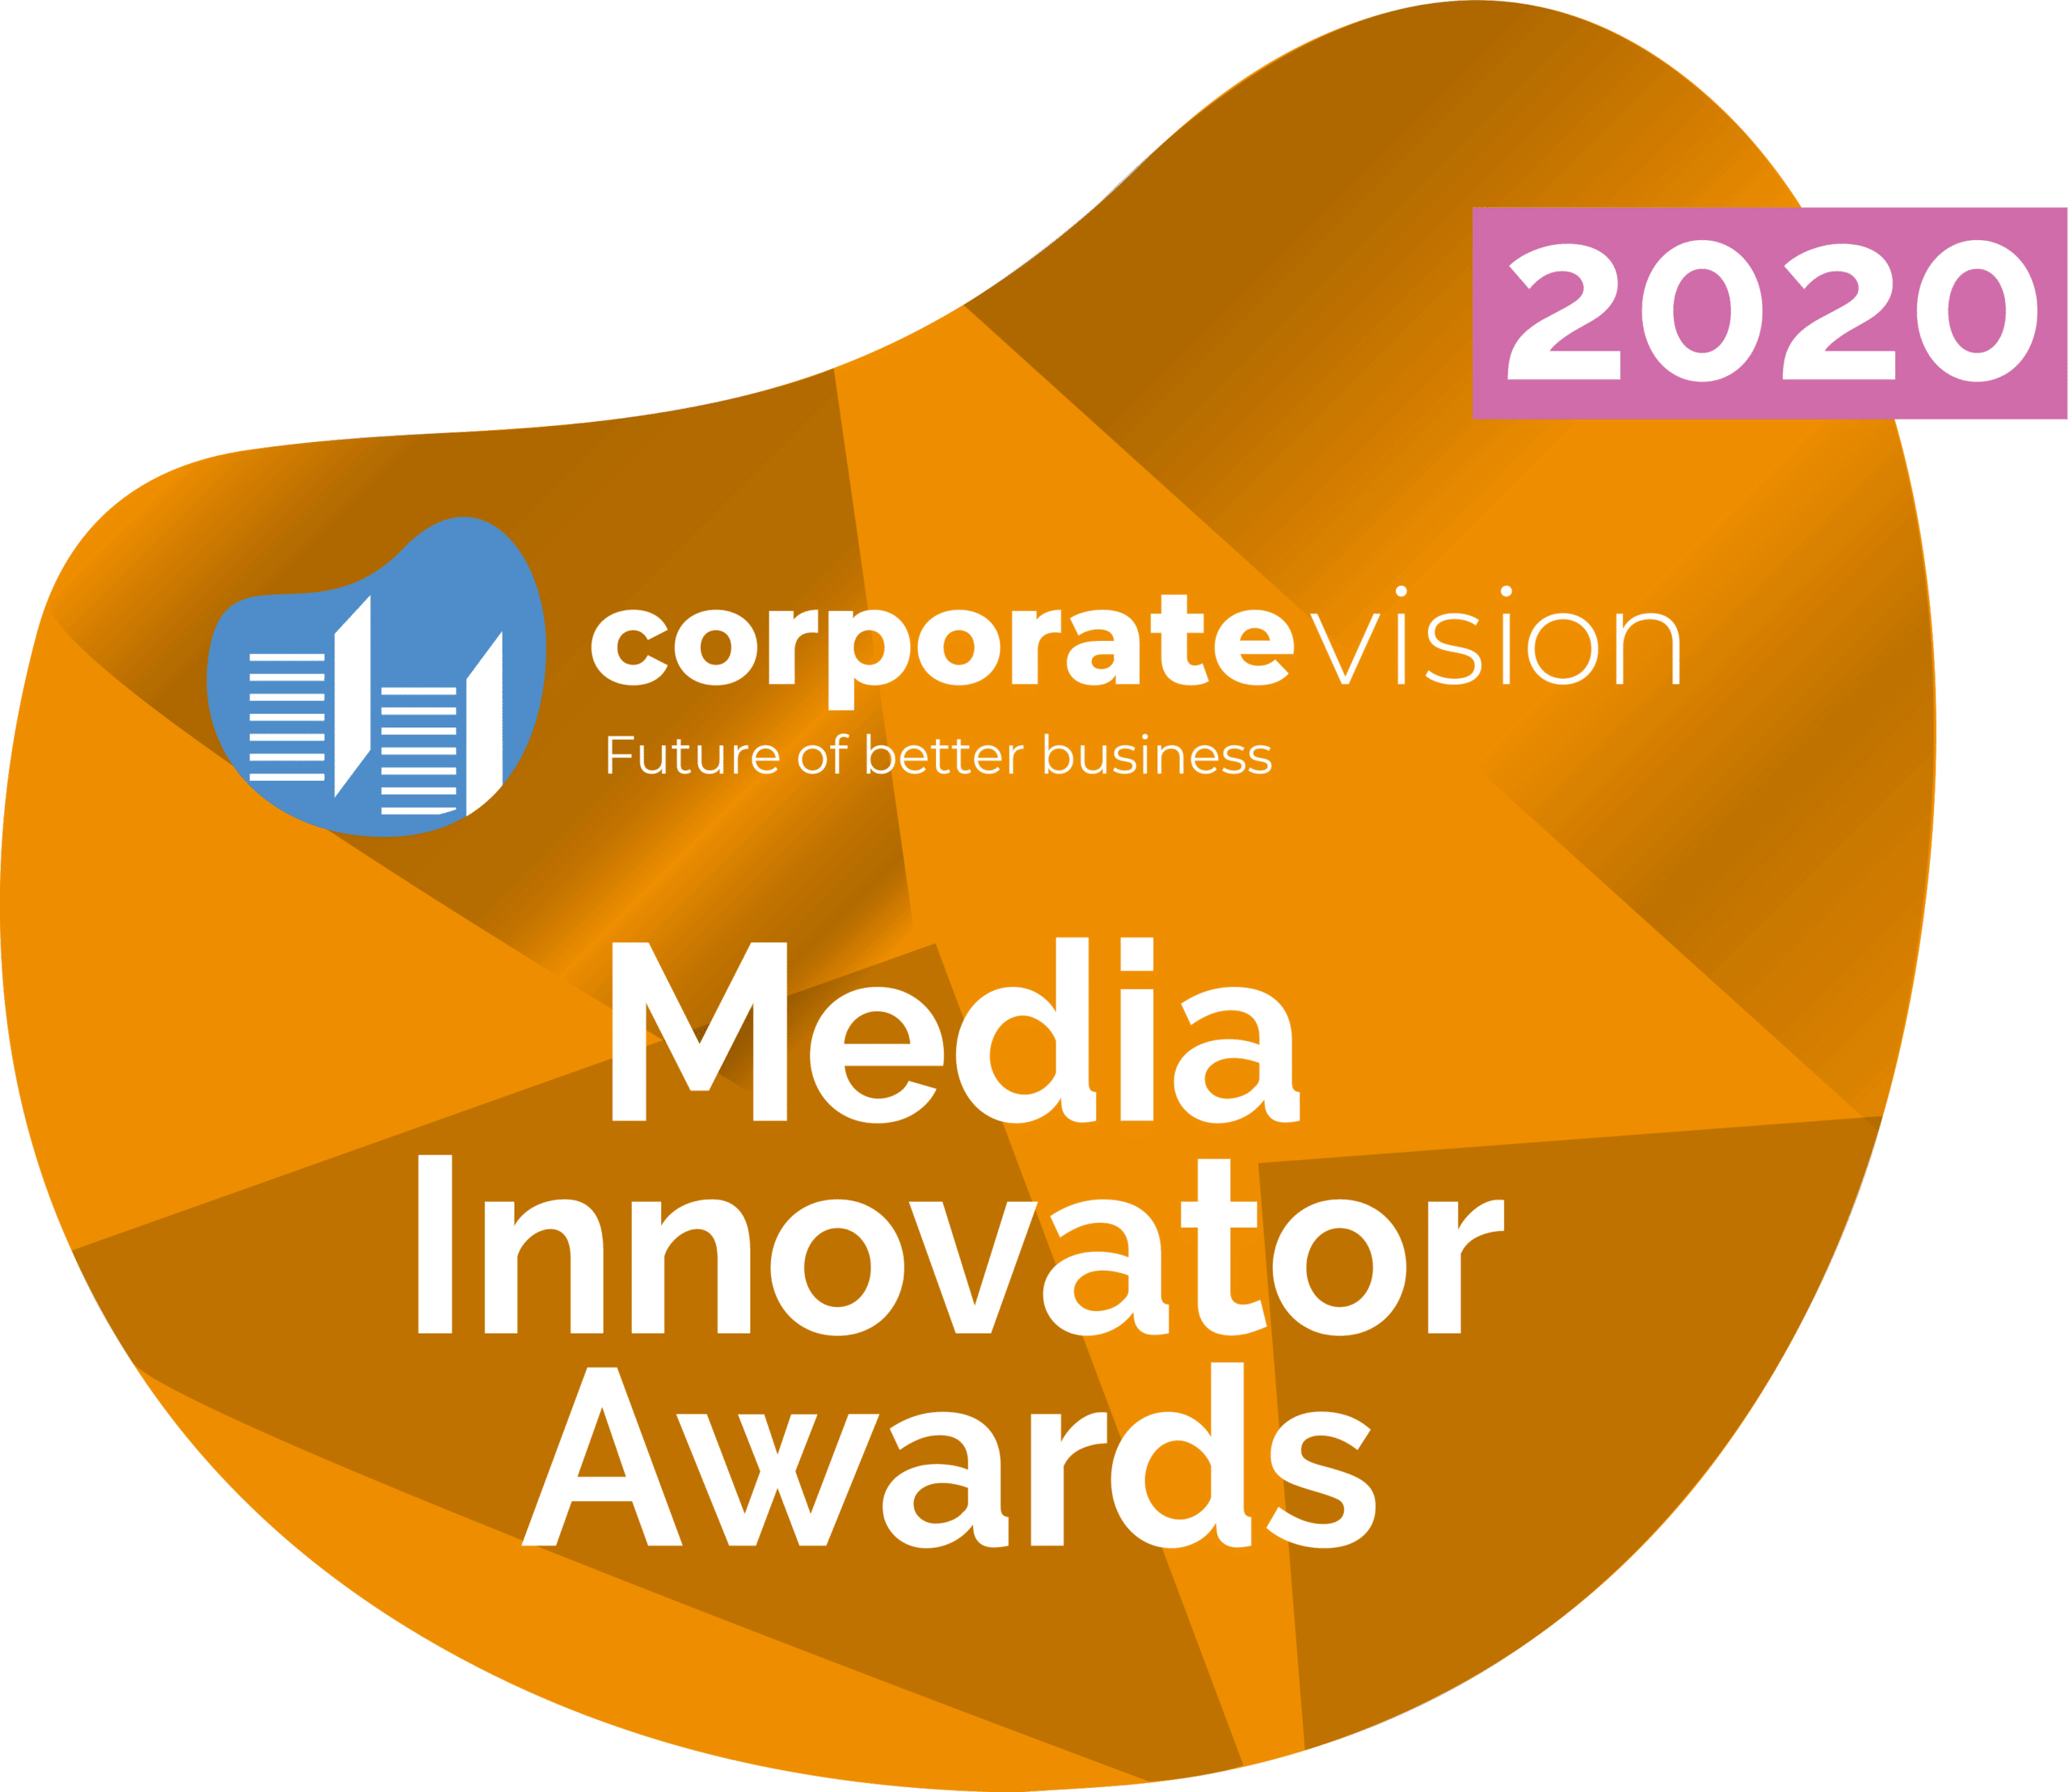 Media Innovator Awards 2020